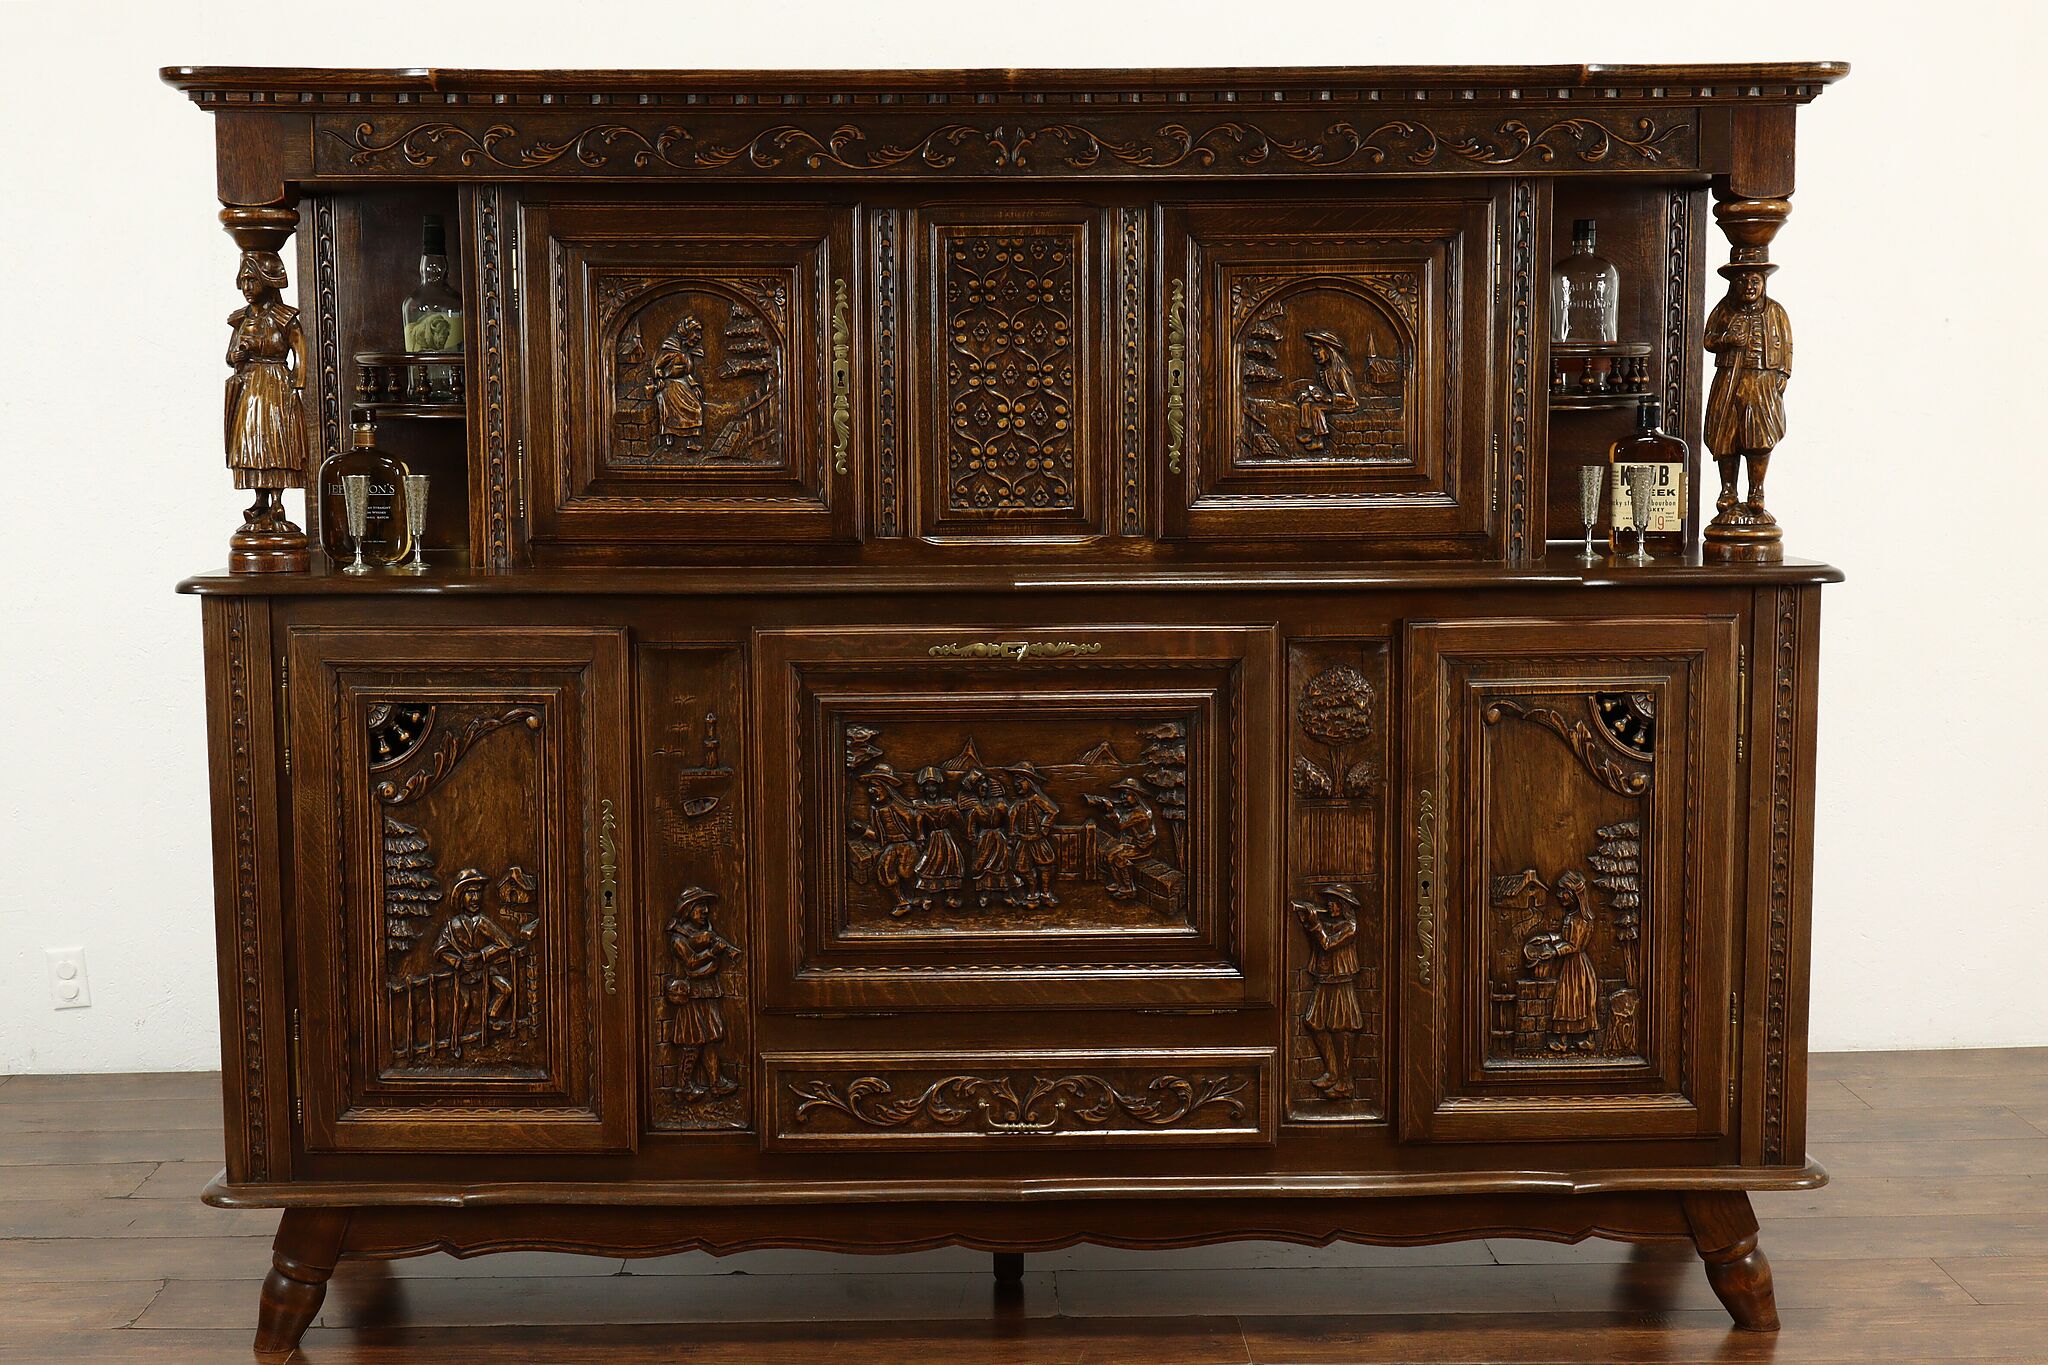 French Brittany Carved Oak Antique Sideboard, Server or Bar Cabinet